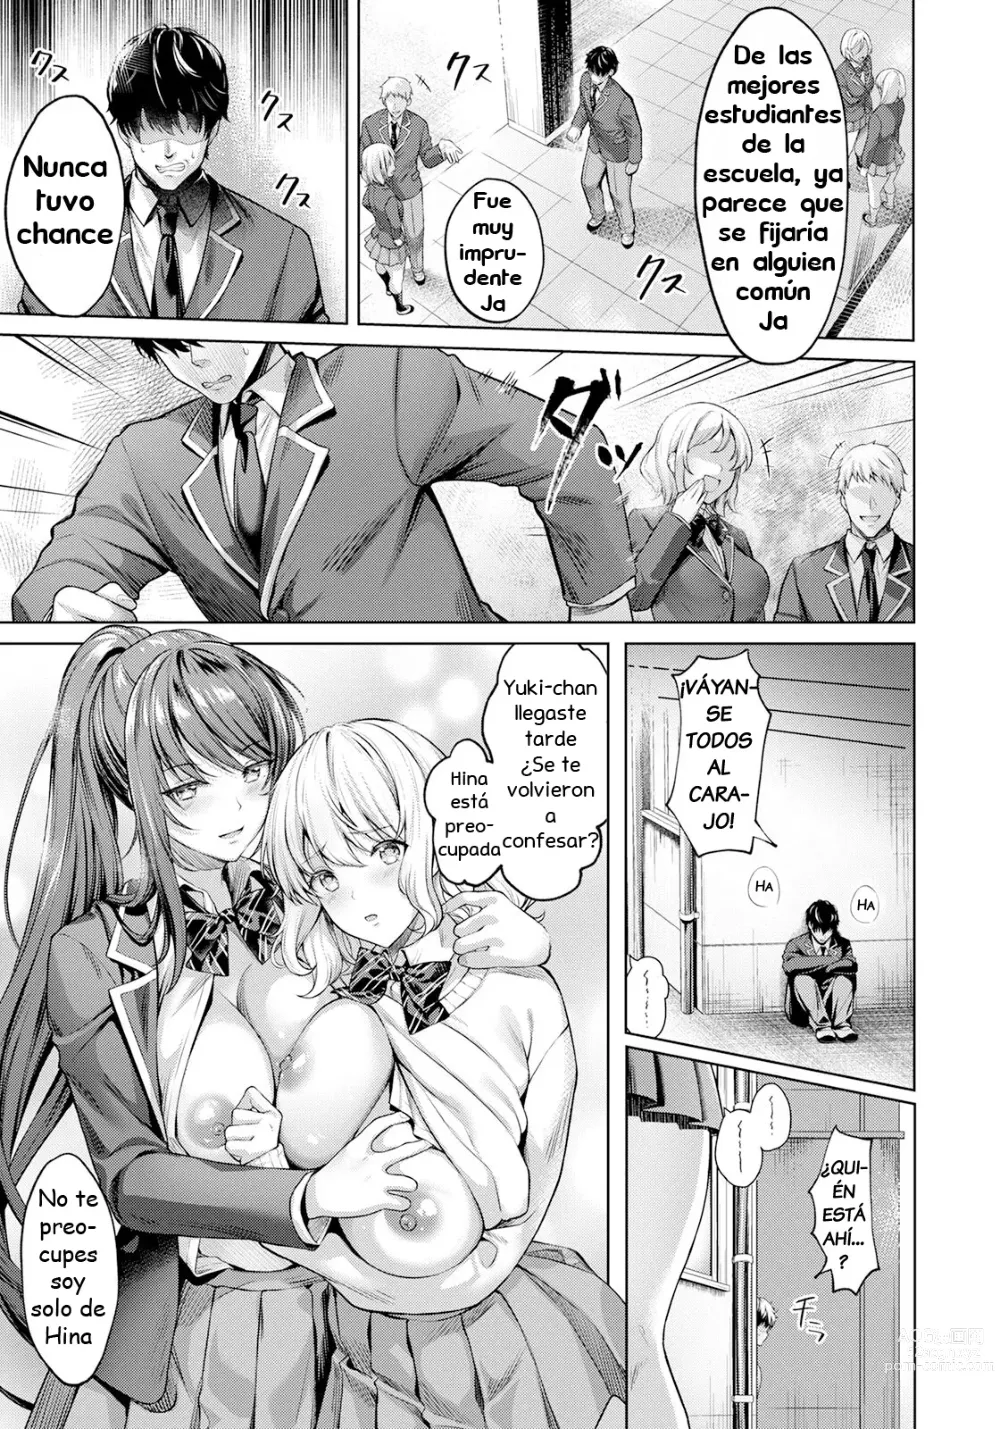 Page 3 of manga Dominación del Placer ~No puedo creer que perdí~